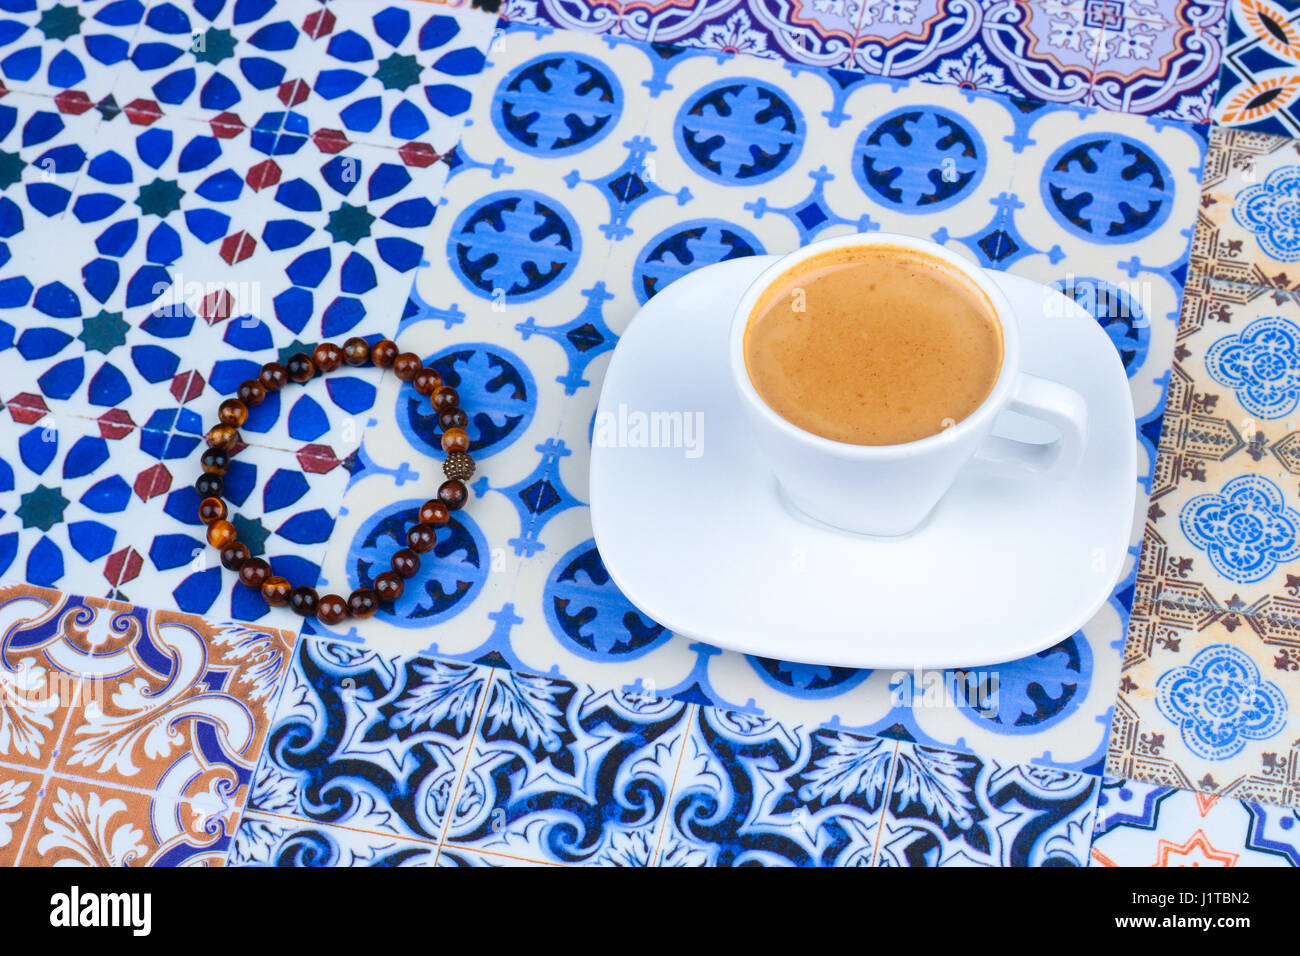 Tasse de café d'Arabie orientale sur un fond coloré / Espresso sur un fond coloré avec des fleurs, bagues et dates Tamr Banque D'Images